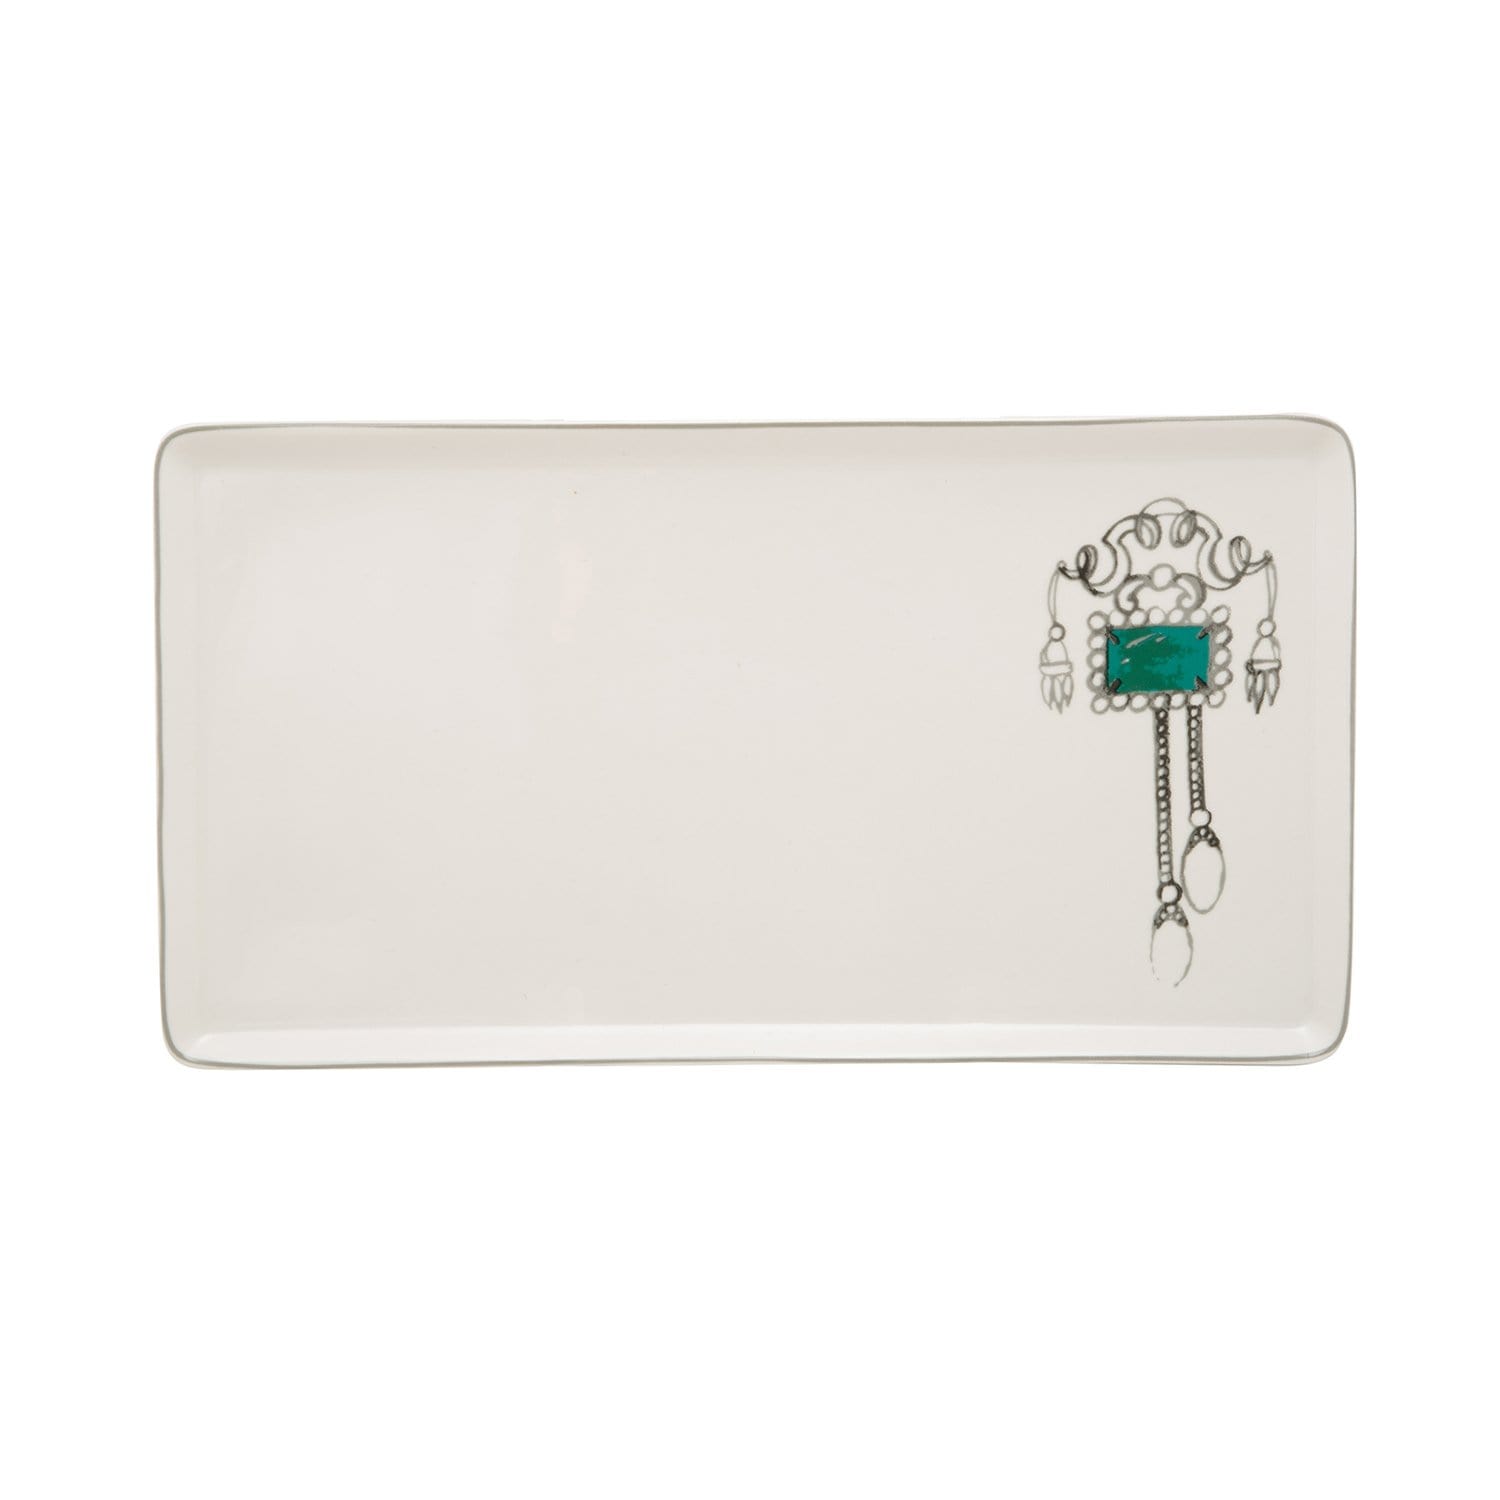 L'atelier FB Emerald Rectangular Plate - 27.8 x 15.1 cm - TC 4711 018 - Jashanmal Home